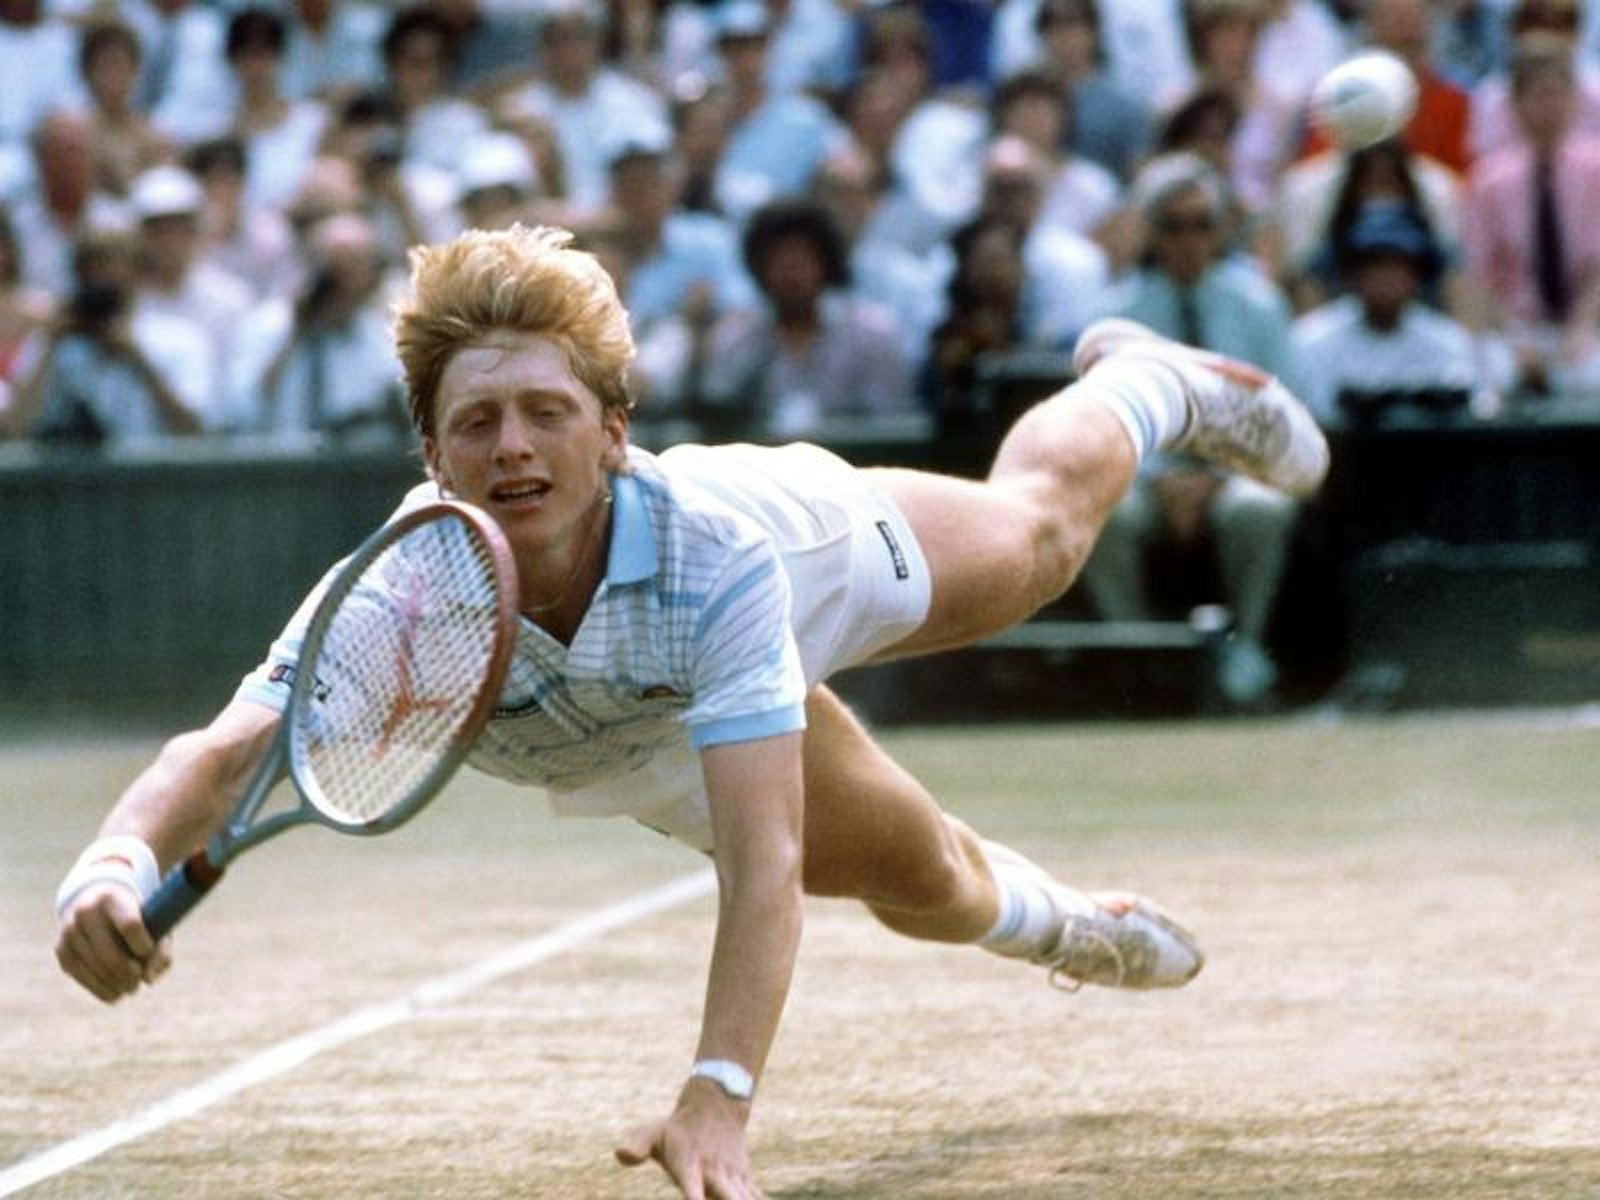 Der junge deutsche Tennisspieler Boris Becker hechtet während des Turniers in Wimbledon im Juni 1985 nach einem Ball. (Archivfoto)